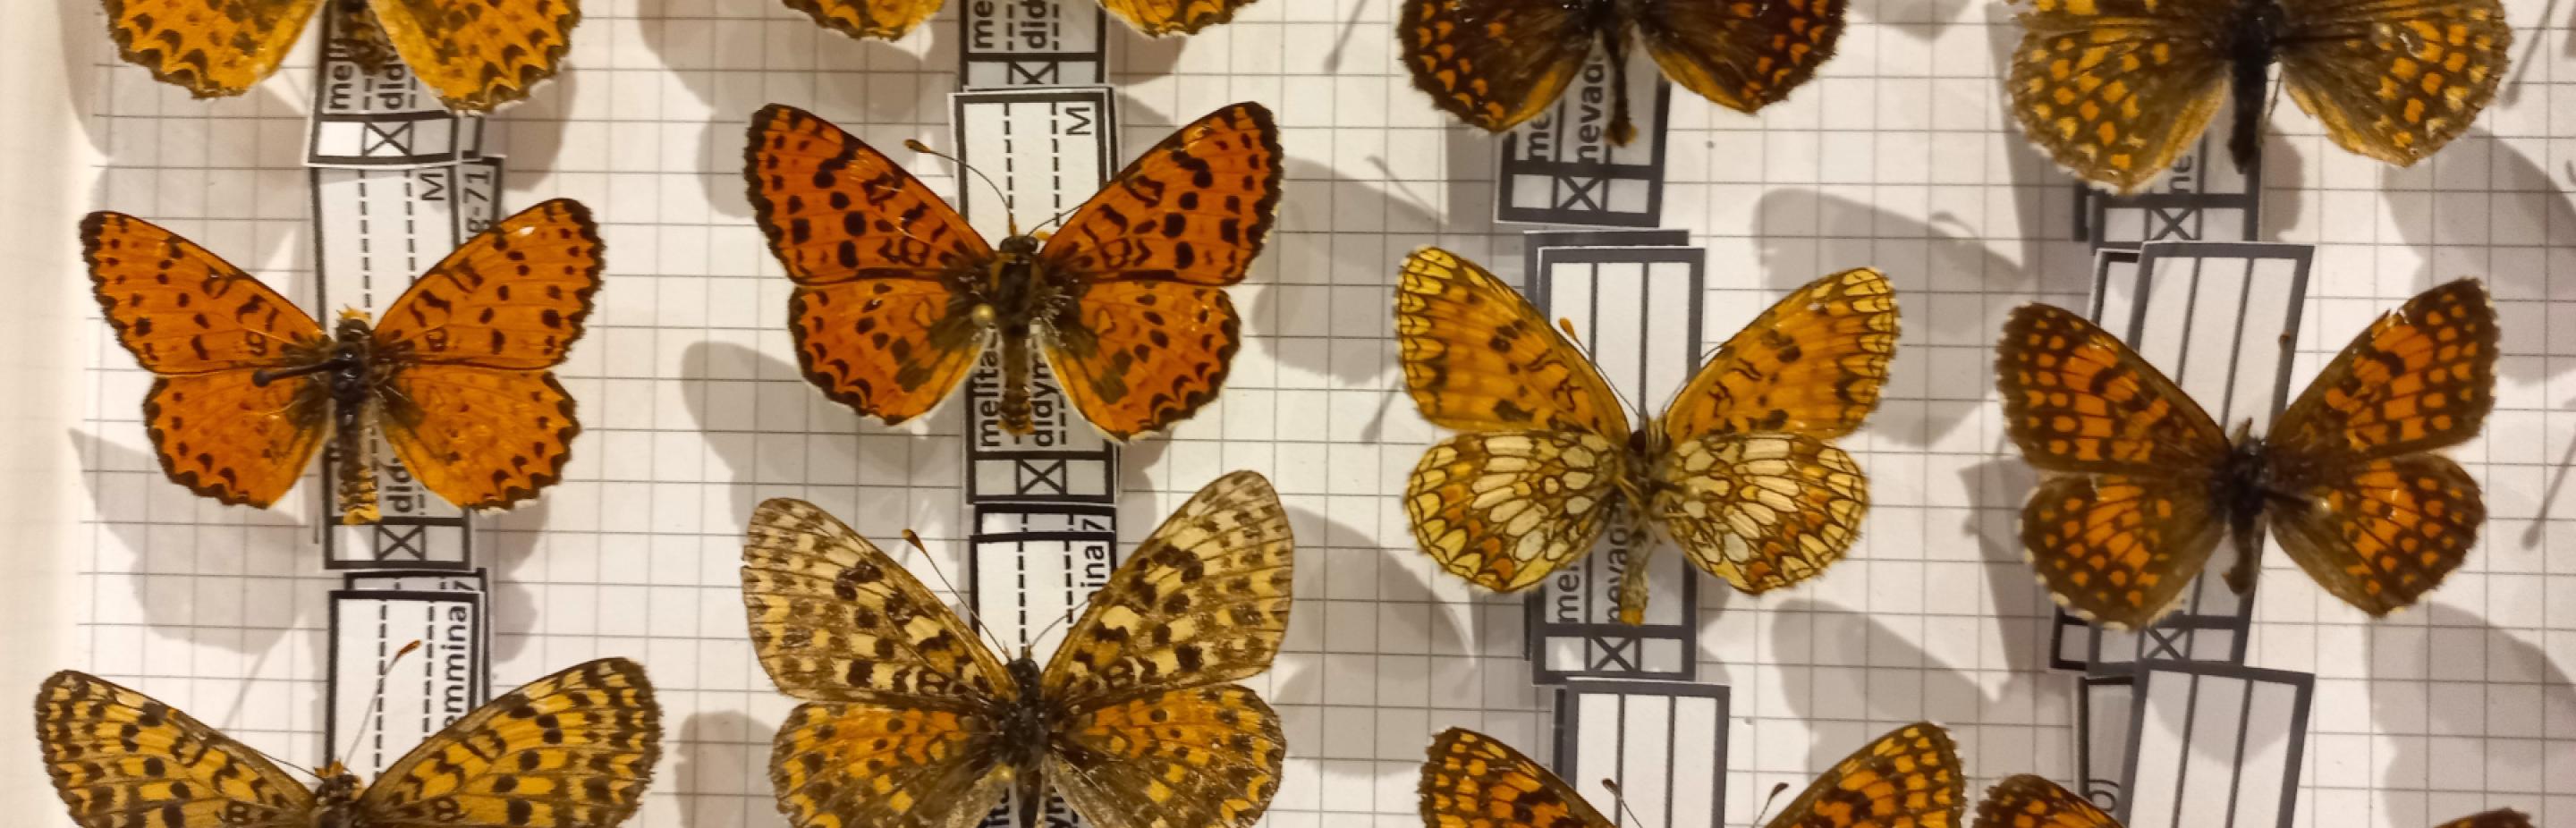 Particolare della collezione di farfalle